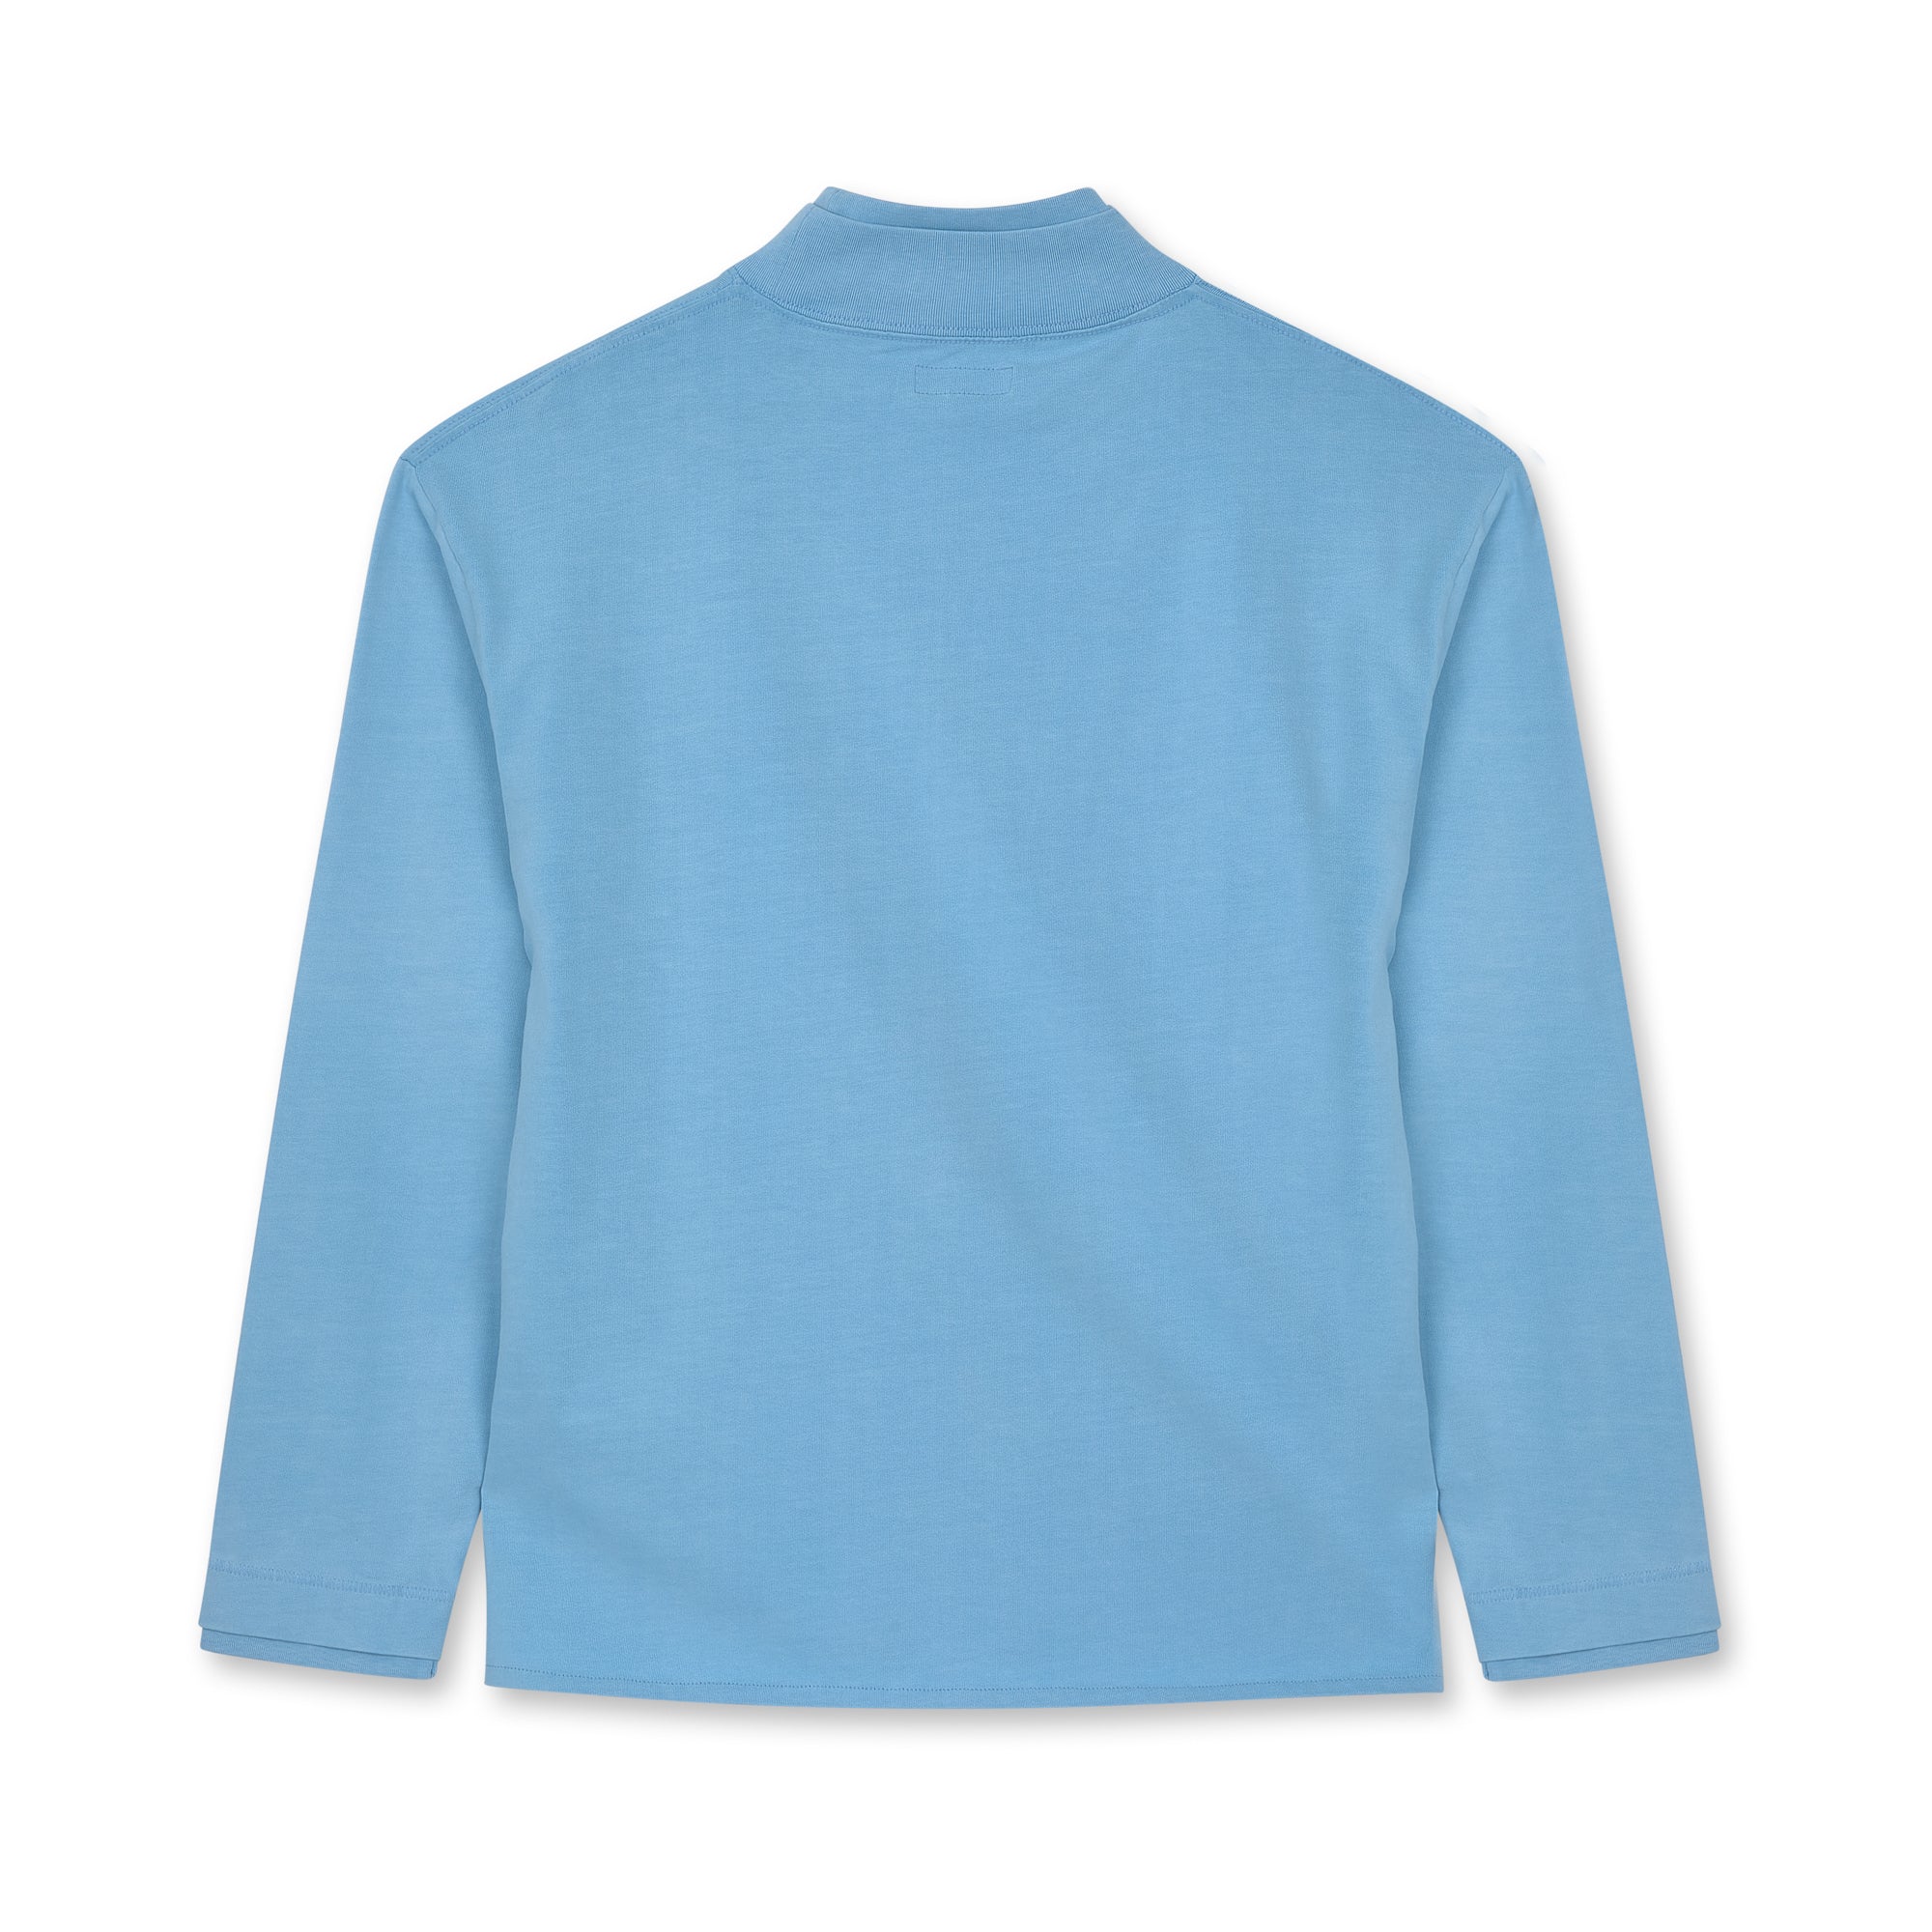 ERL - Men's Sun Longsleeve T-Shirt - (Baby Blue) view 2